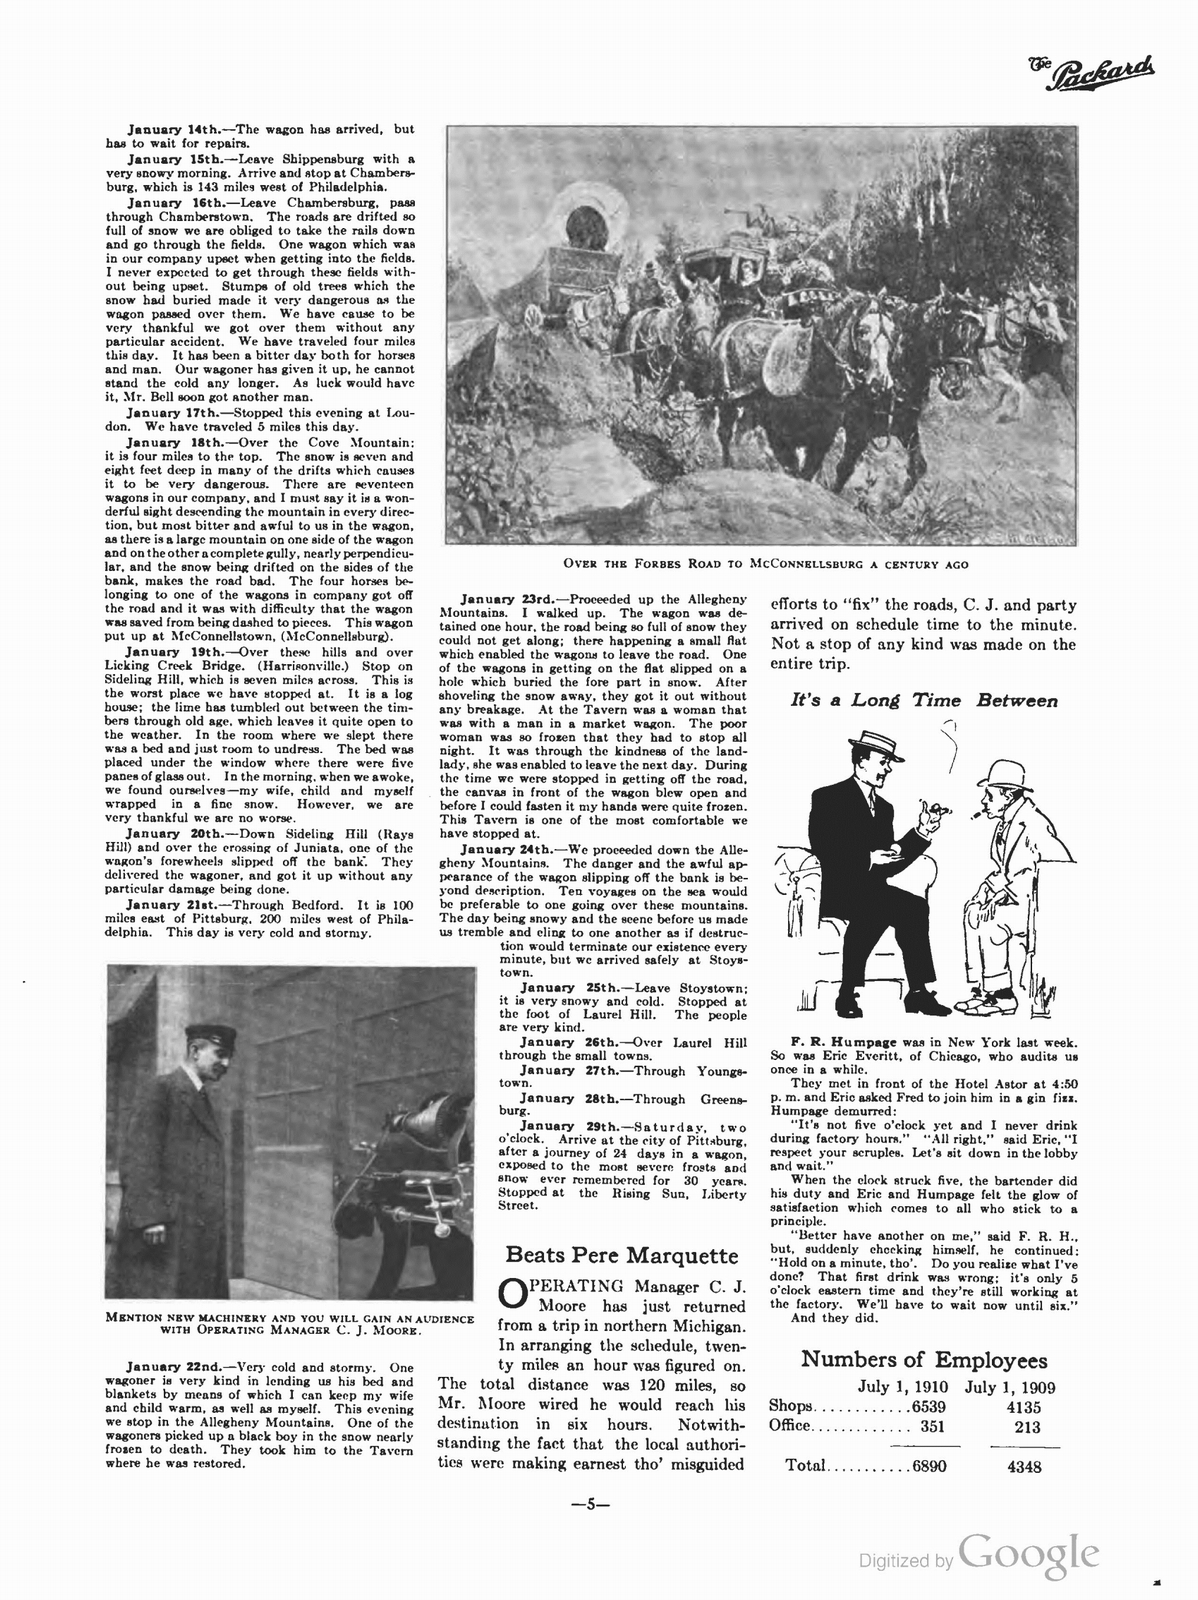 n_1910 'The Packard' Newsletter-055.jpg